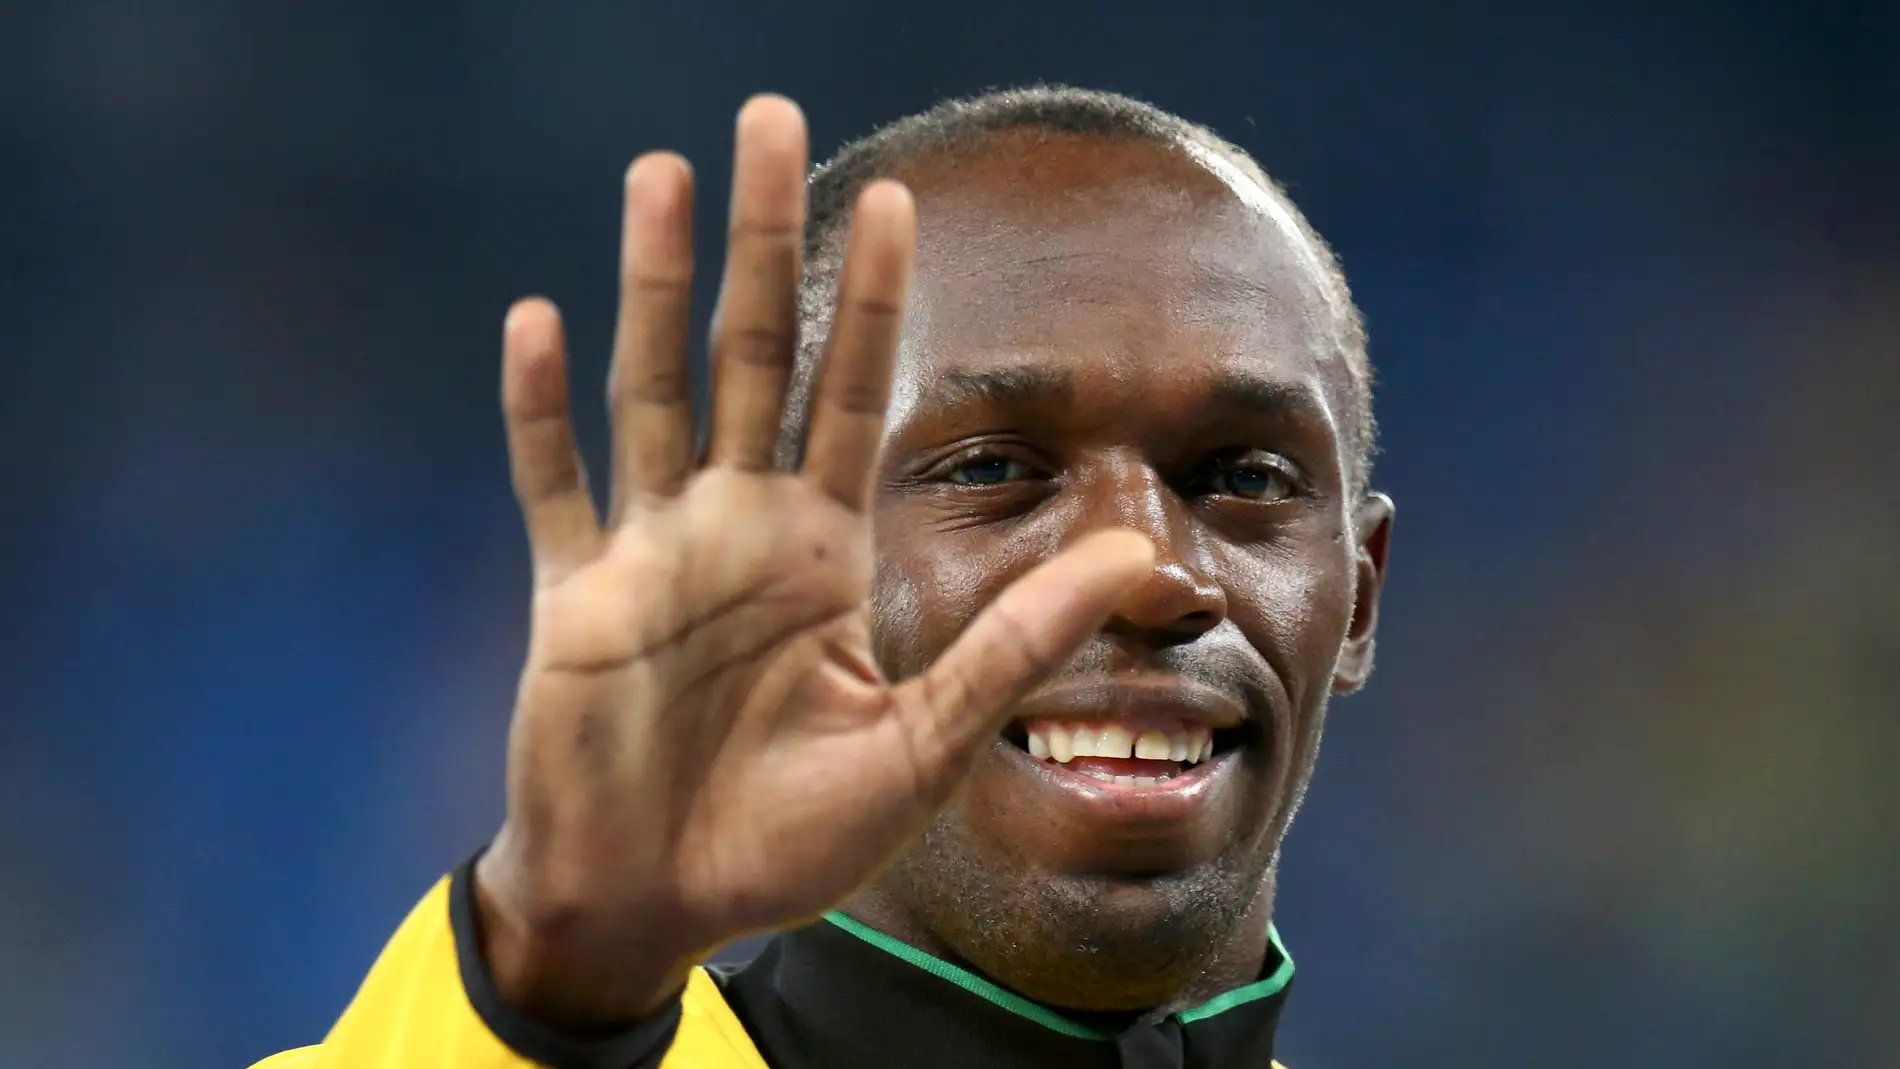 Usain Bolt saludando